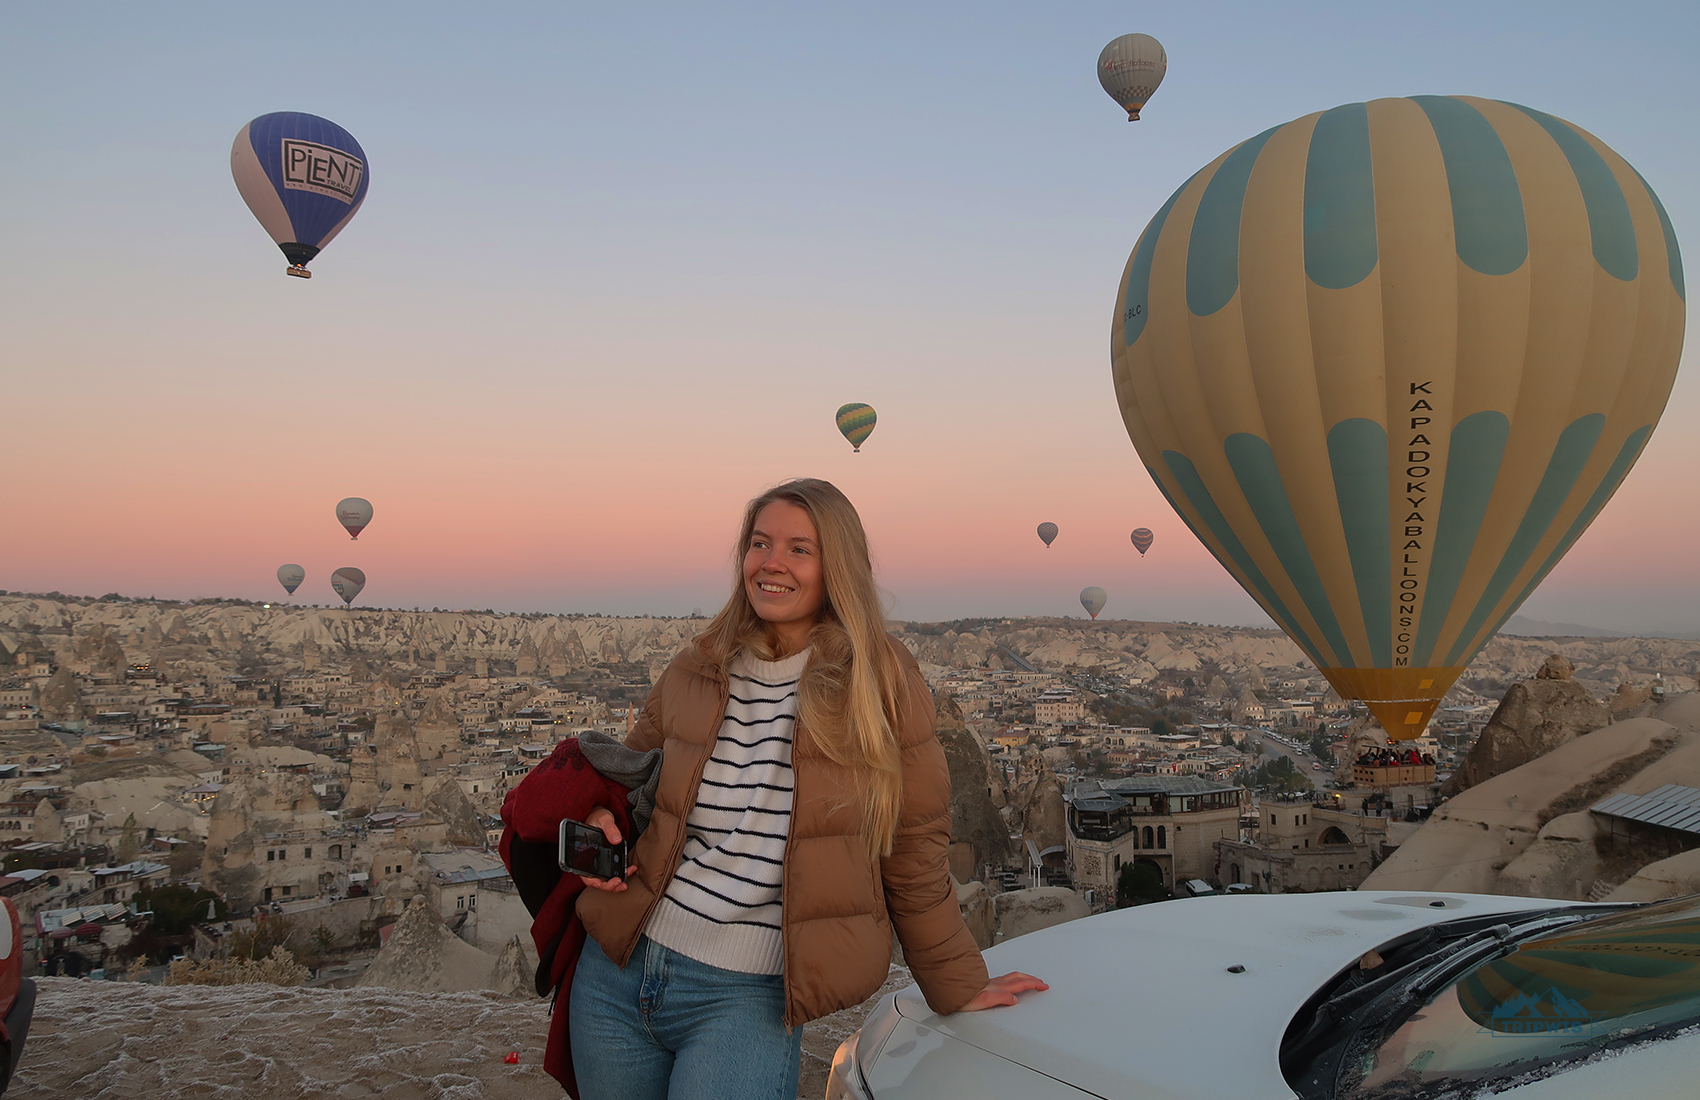 cappadocia balloon viewpoint